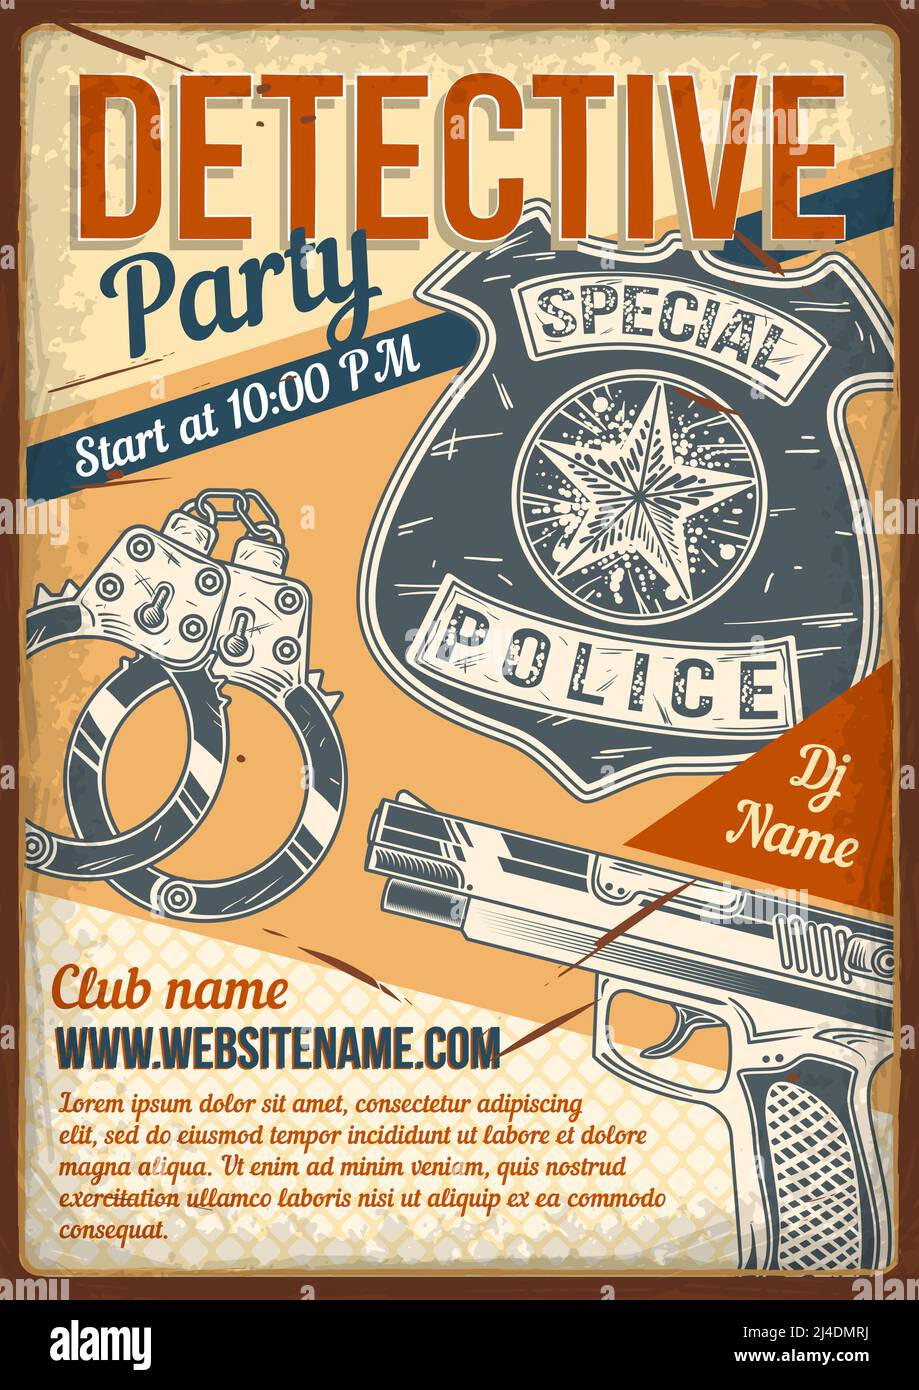 Werbeplakat-Design mit Illustration von Detektivhandschellen, Pistole, Abzeichen auf Vintage-Hintergrund. Stock Vektor